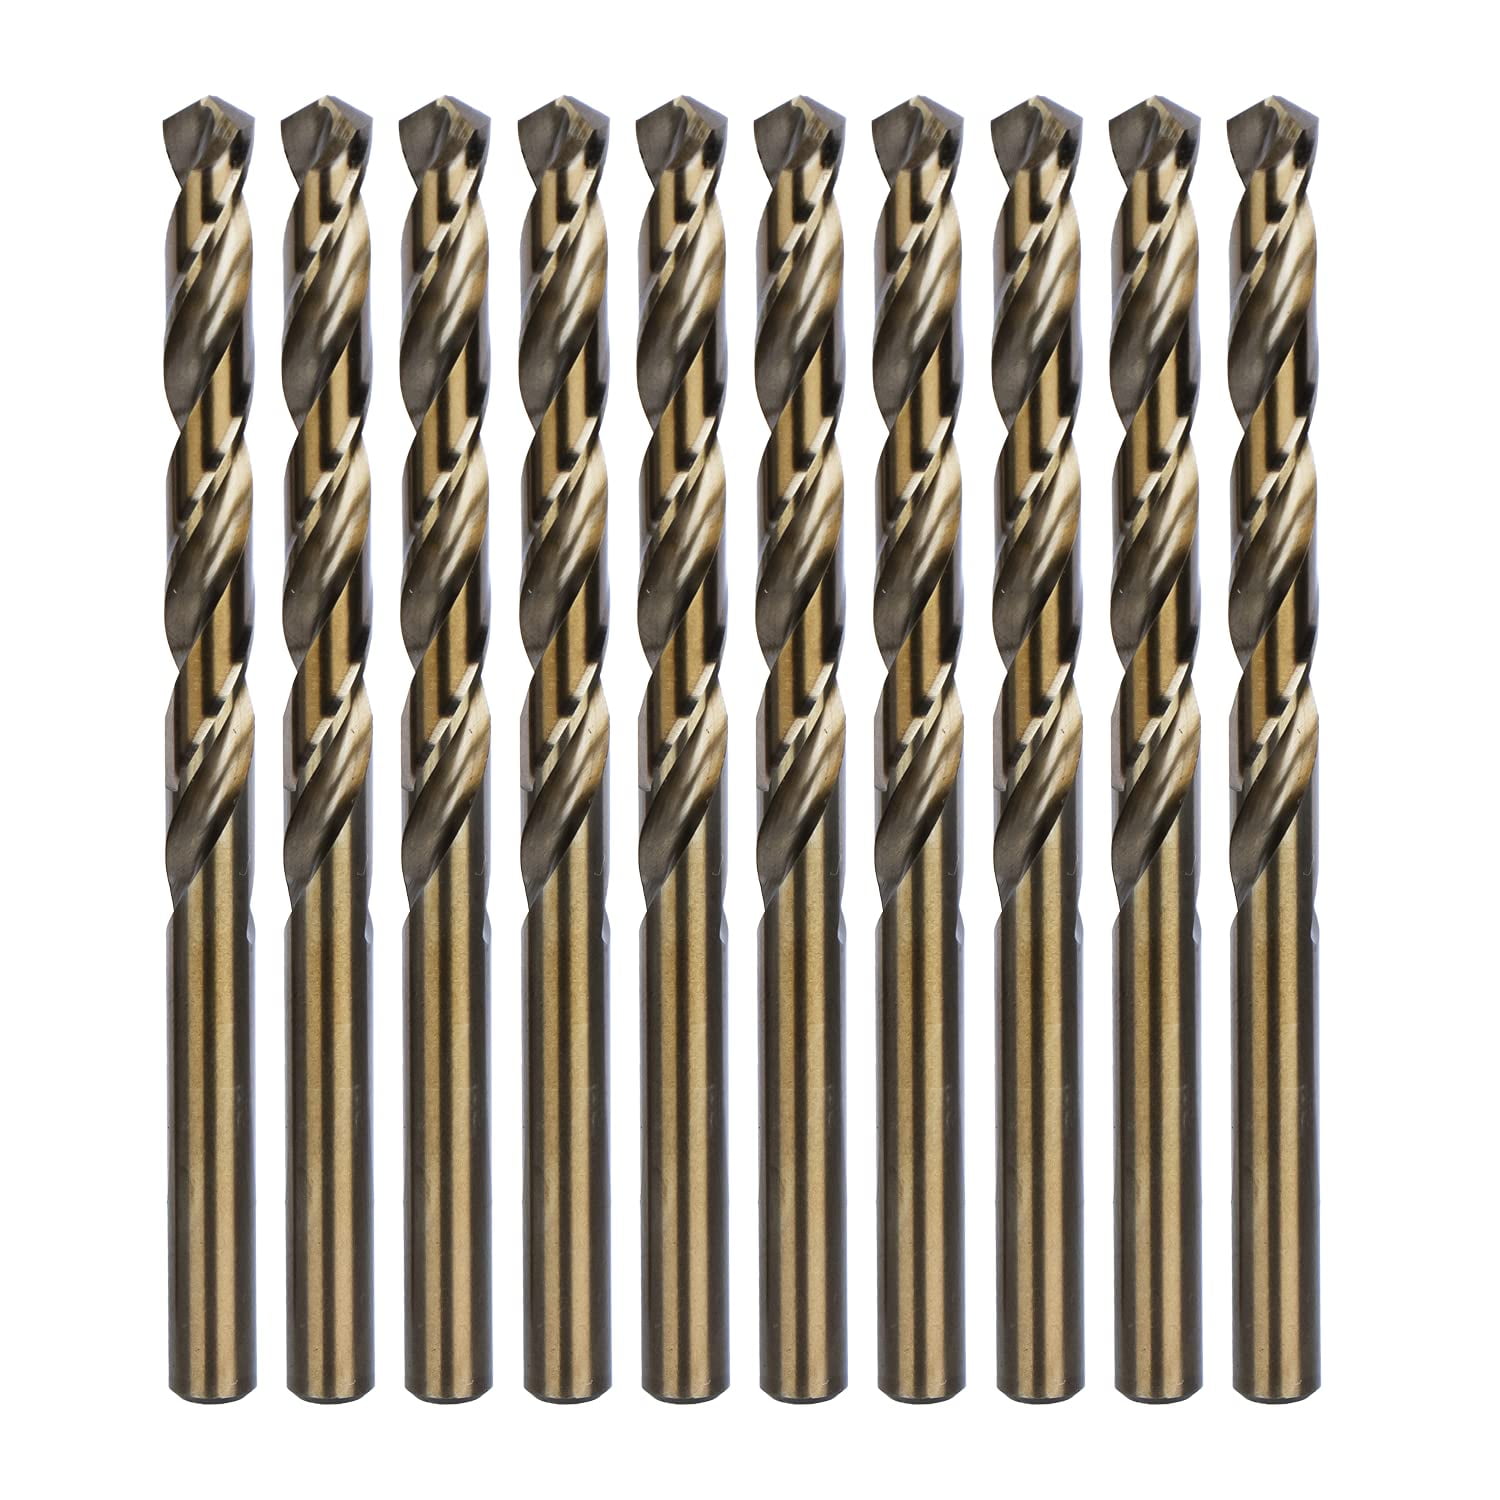 5PCS 5/16" Drill Bit Set HSS Titanium Jobber Length Twist Metal Drill Bits Tools 